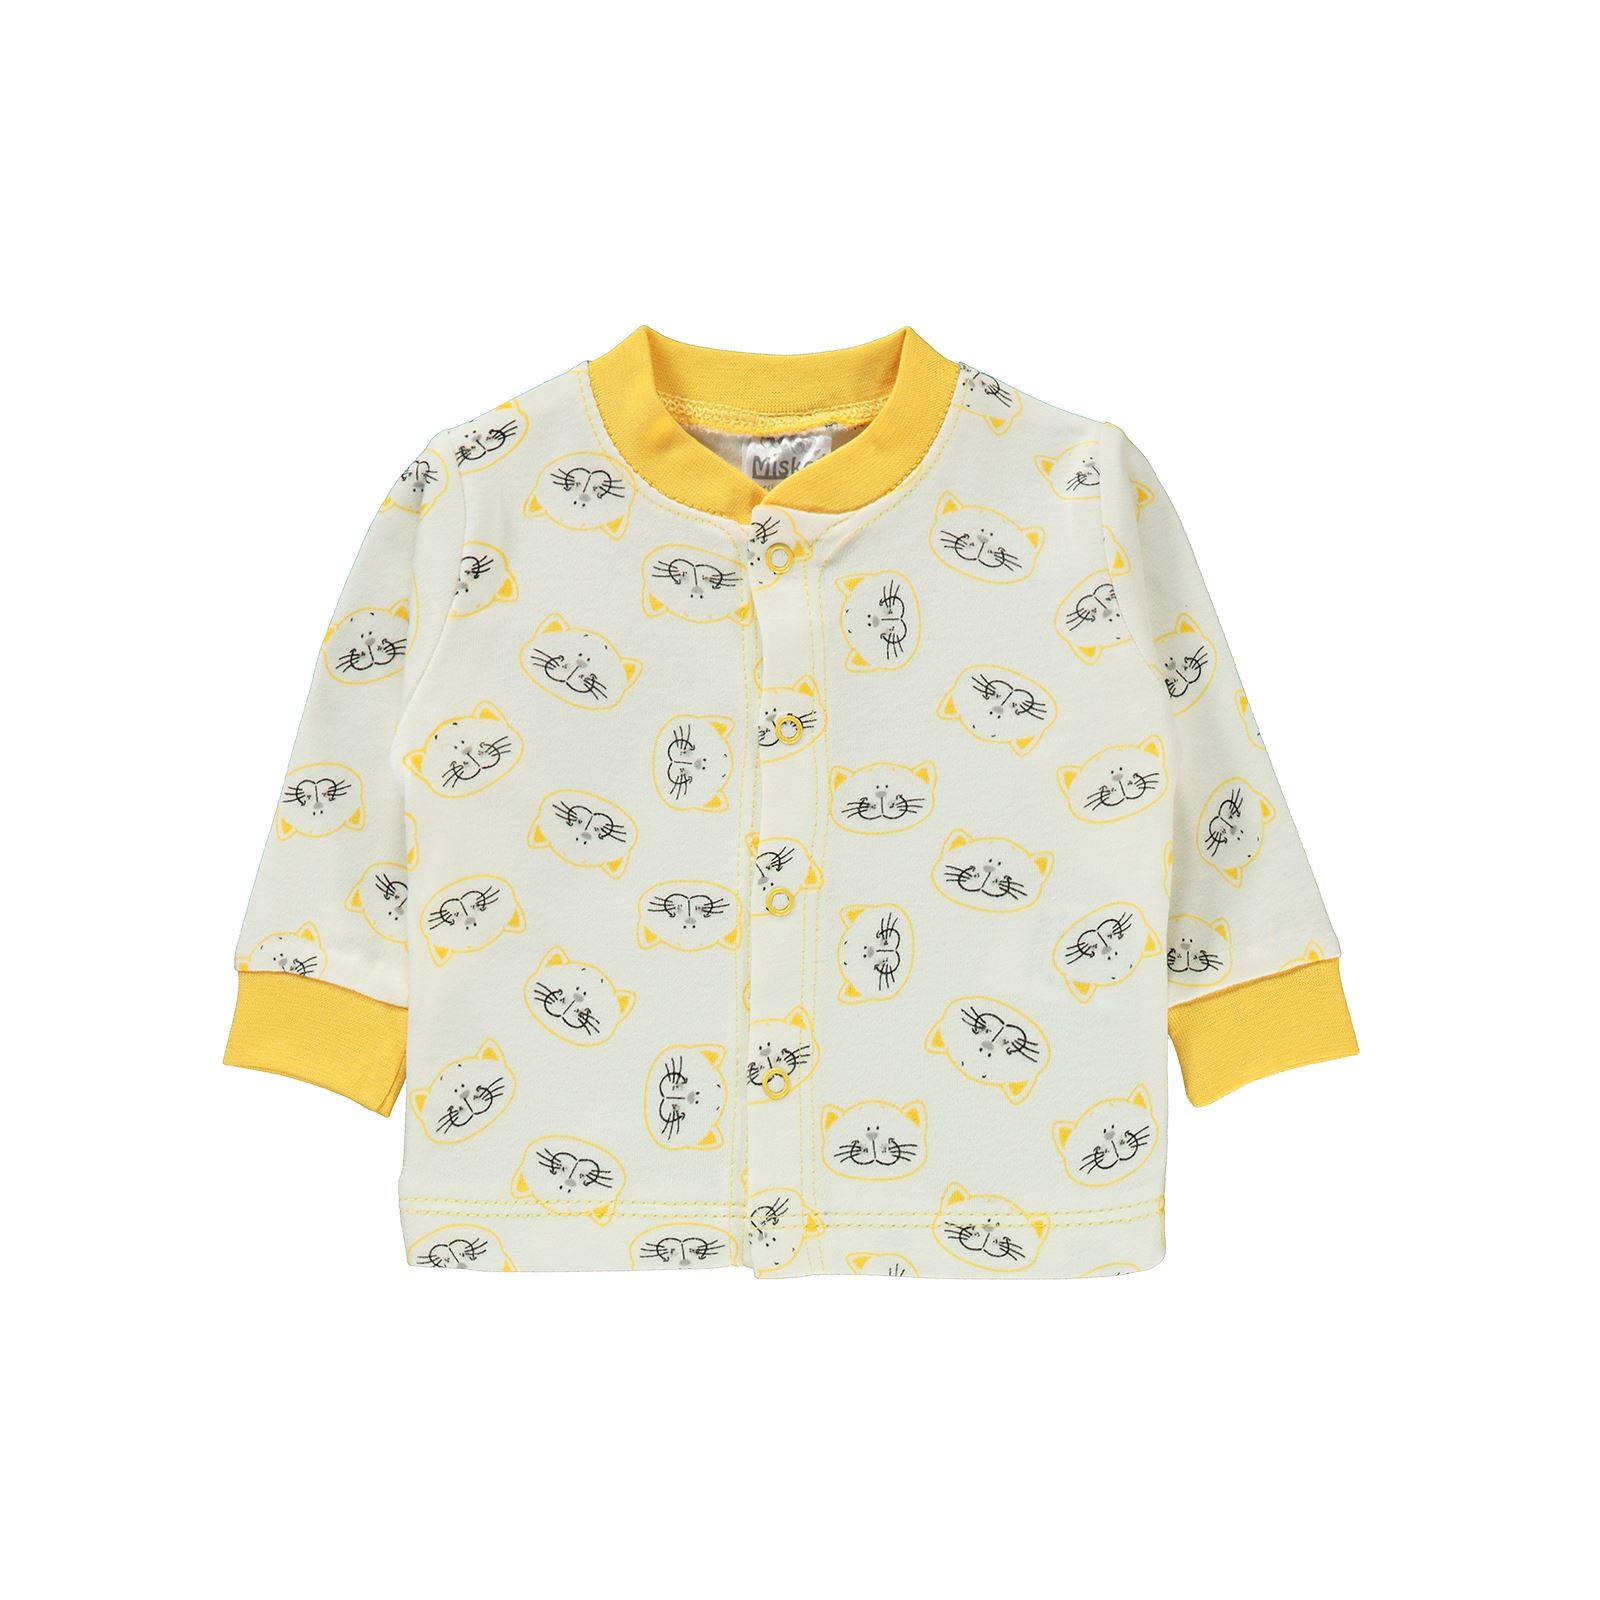 Misket Erkek Bebek Pijama Takımı 0-6 Ay Sarı